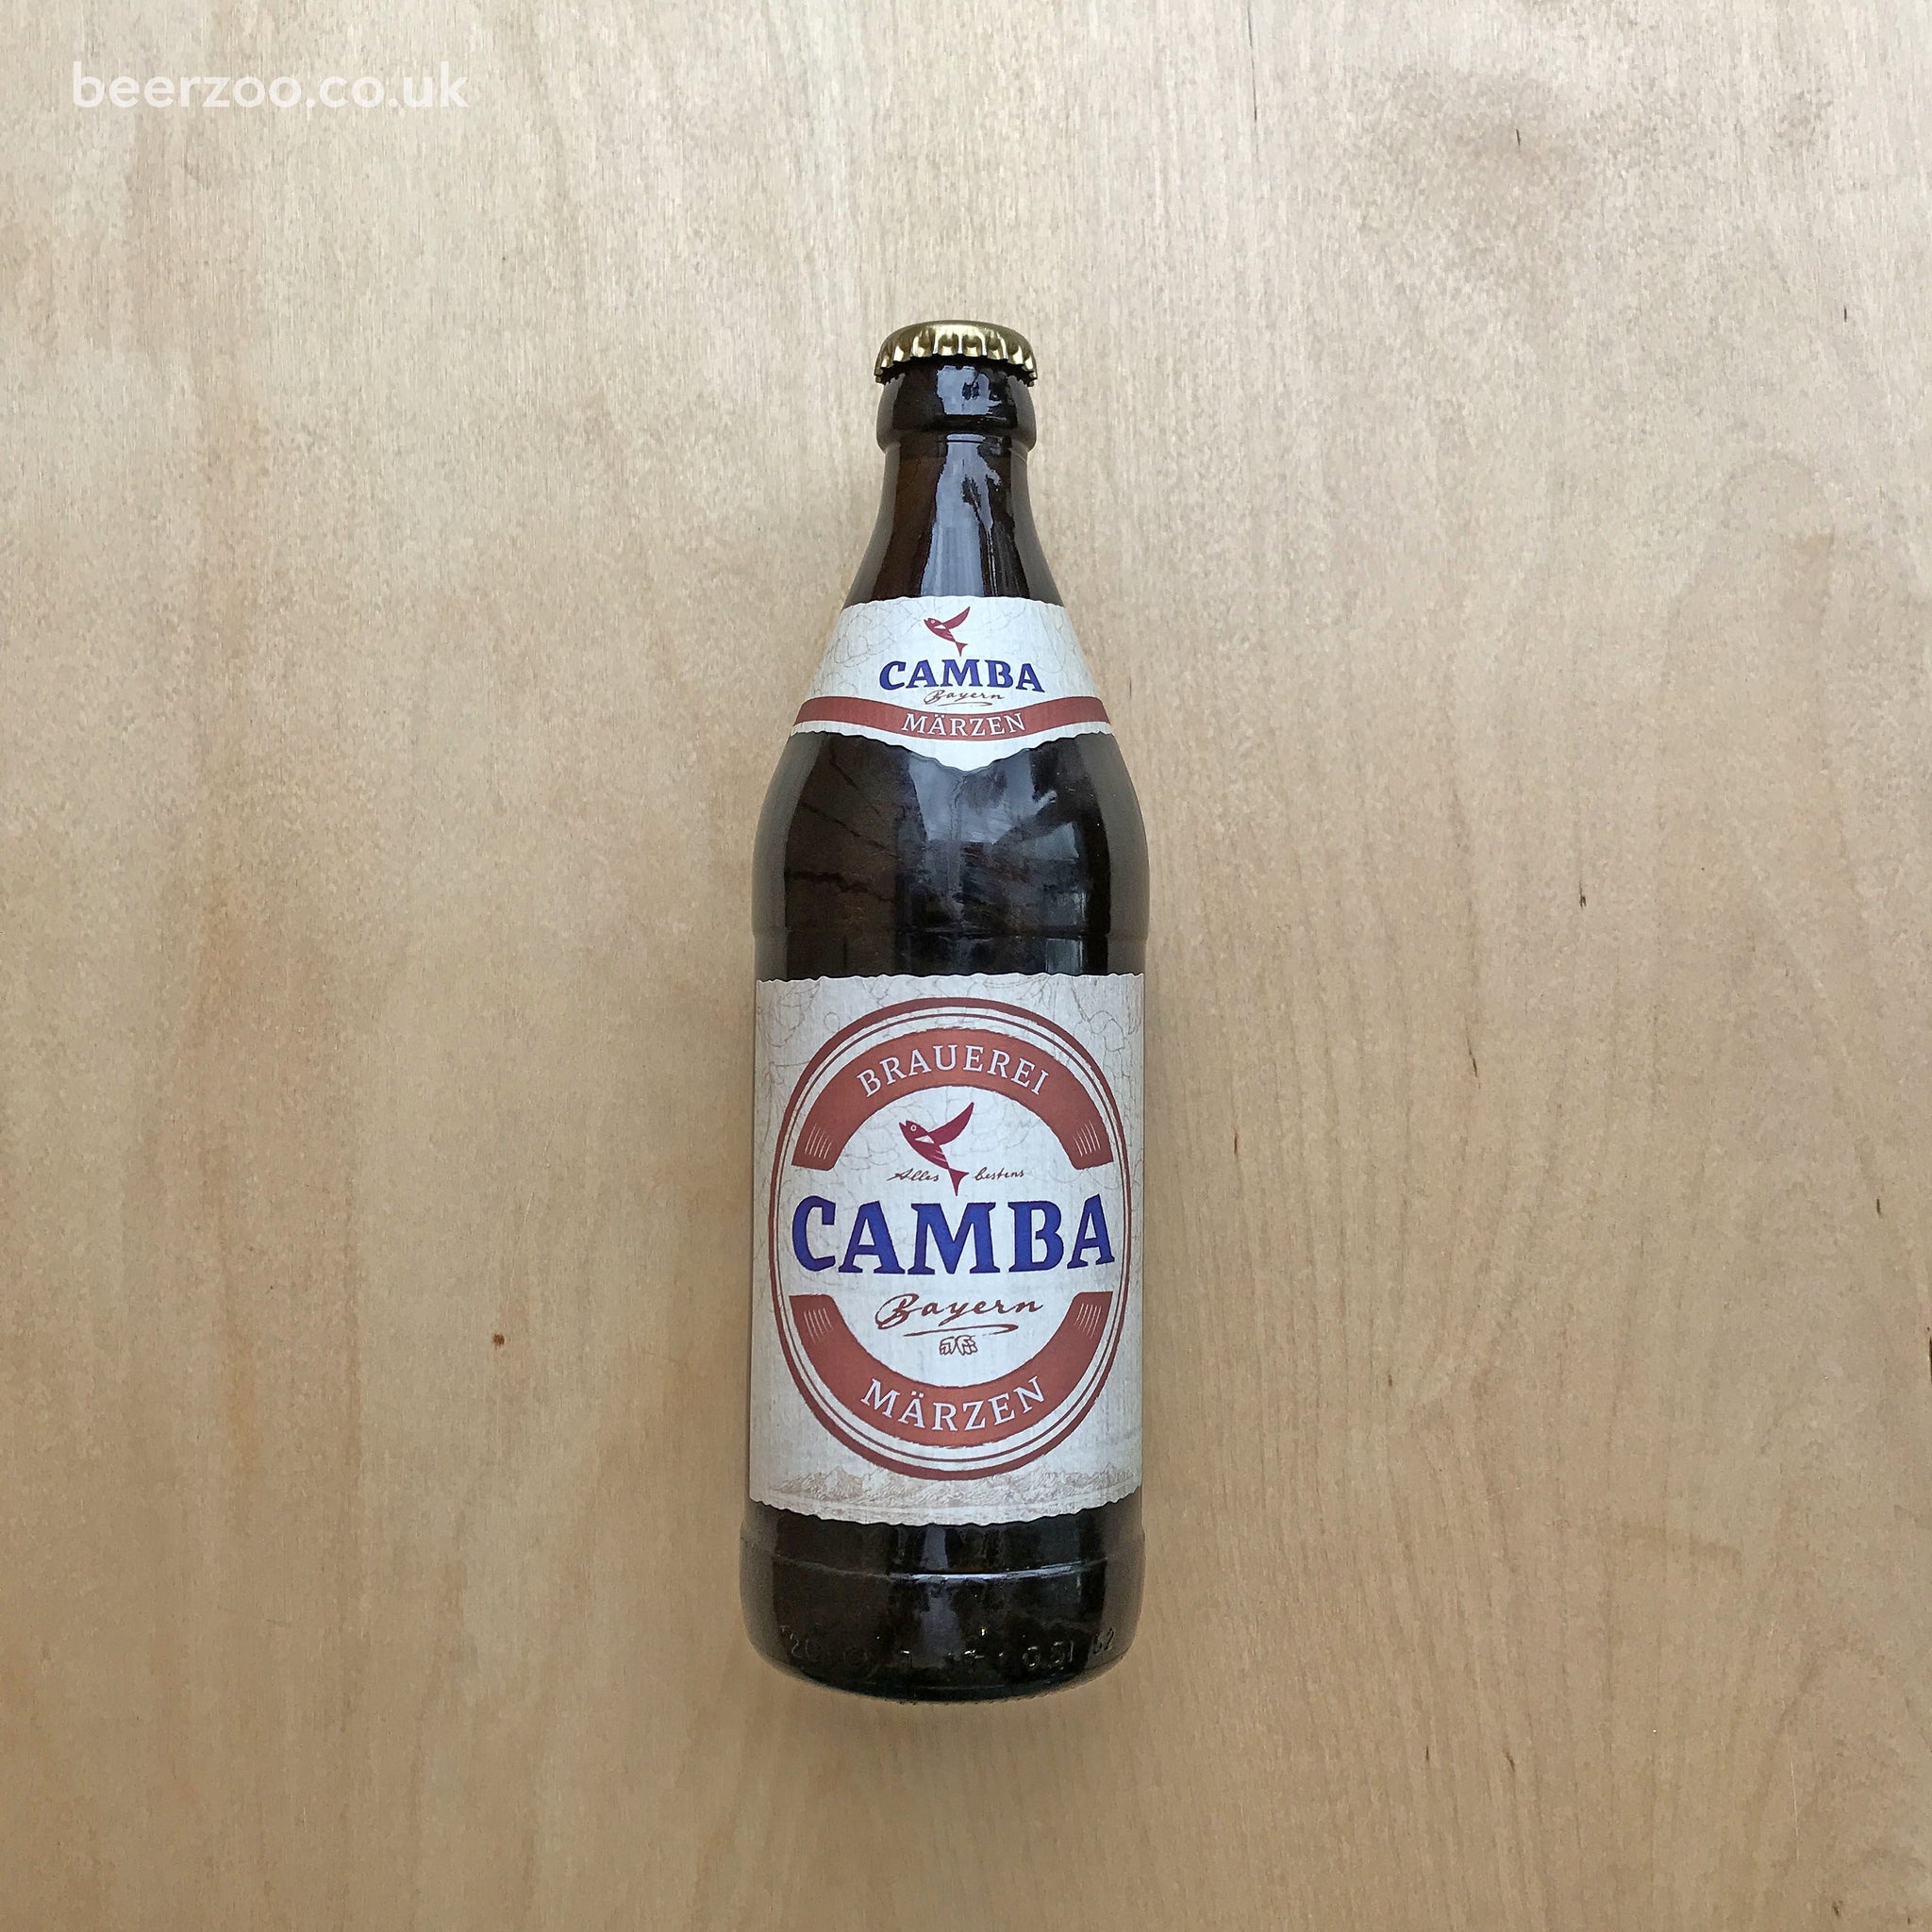 Camba - Marzen 5.8% (500ml)